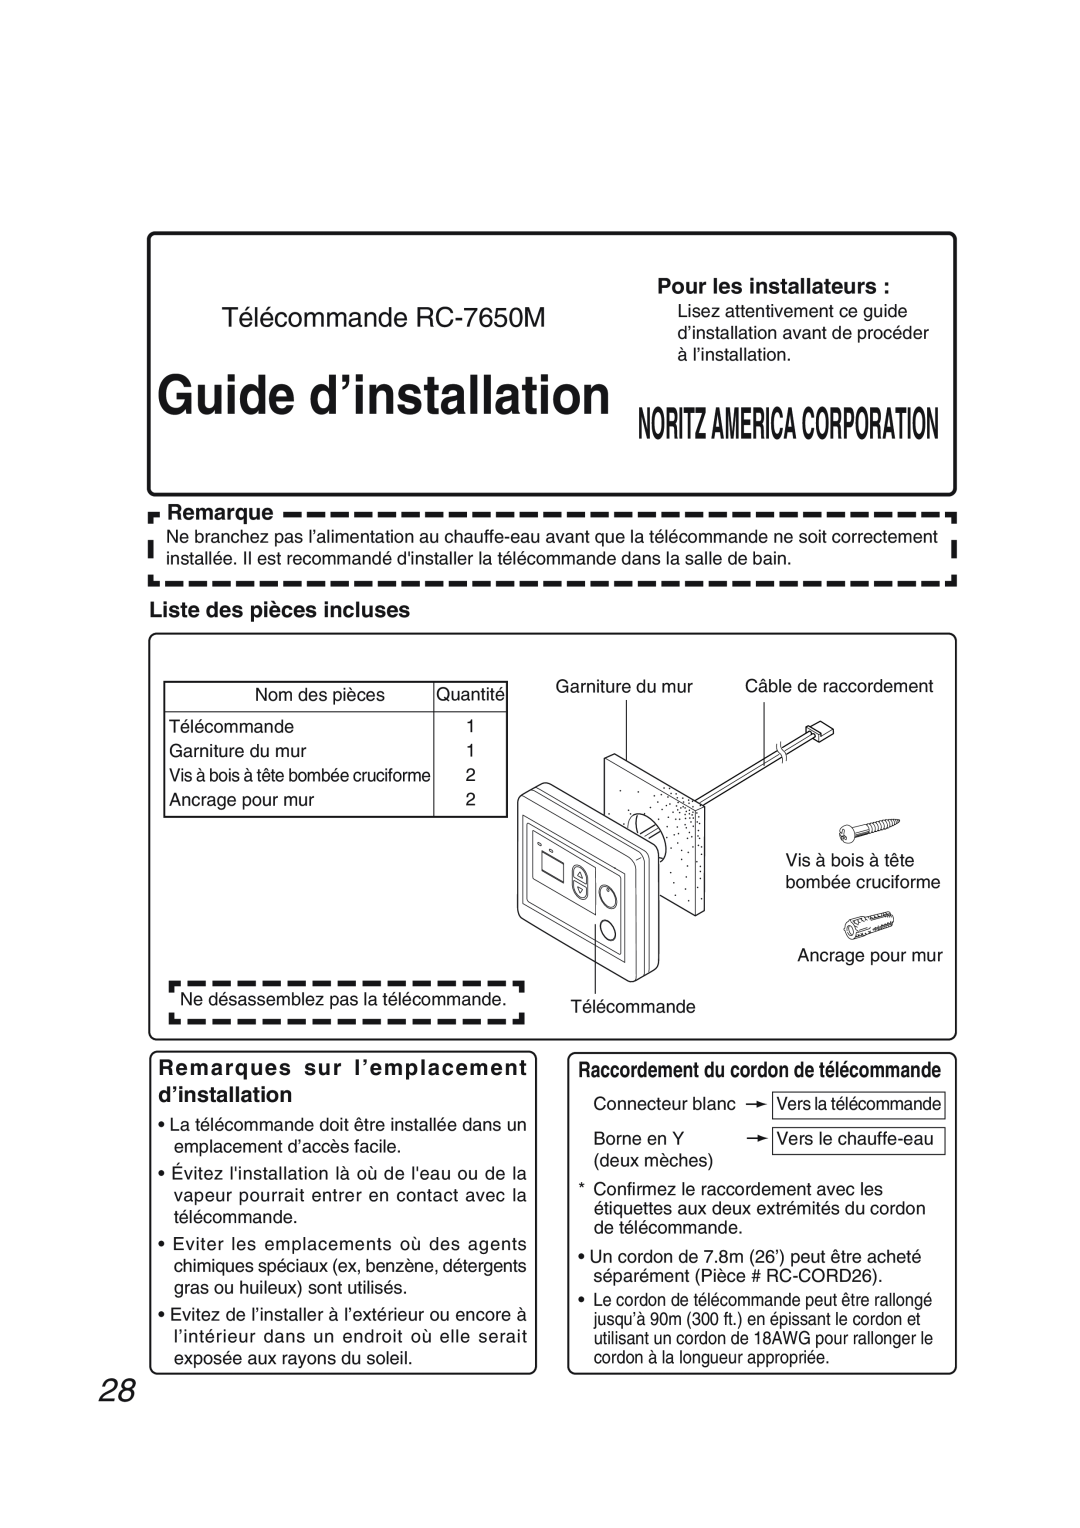 Pentax N-0751M-OD Guide d’installation NORITZ AMERICA CORPORATION, Télécommande RC-7650M, Pour les installateurs, Remarque 